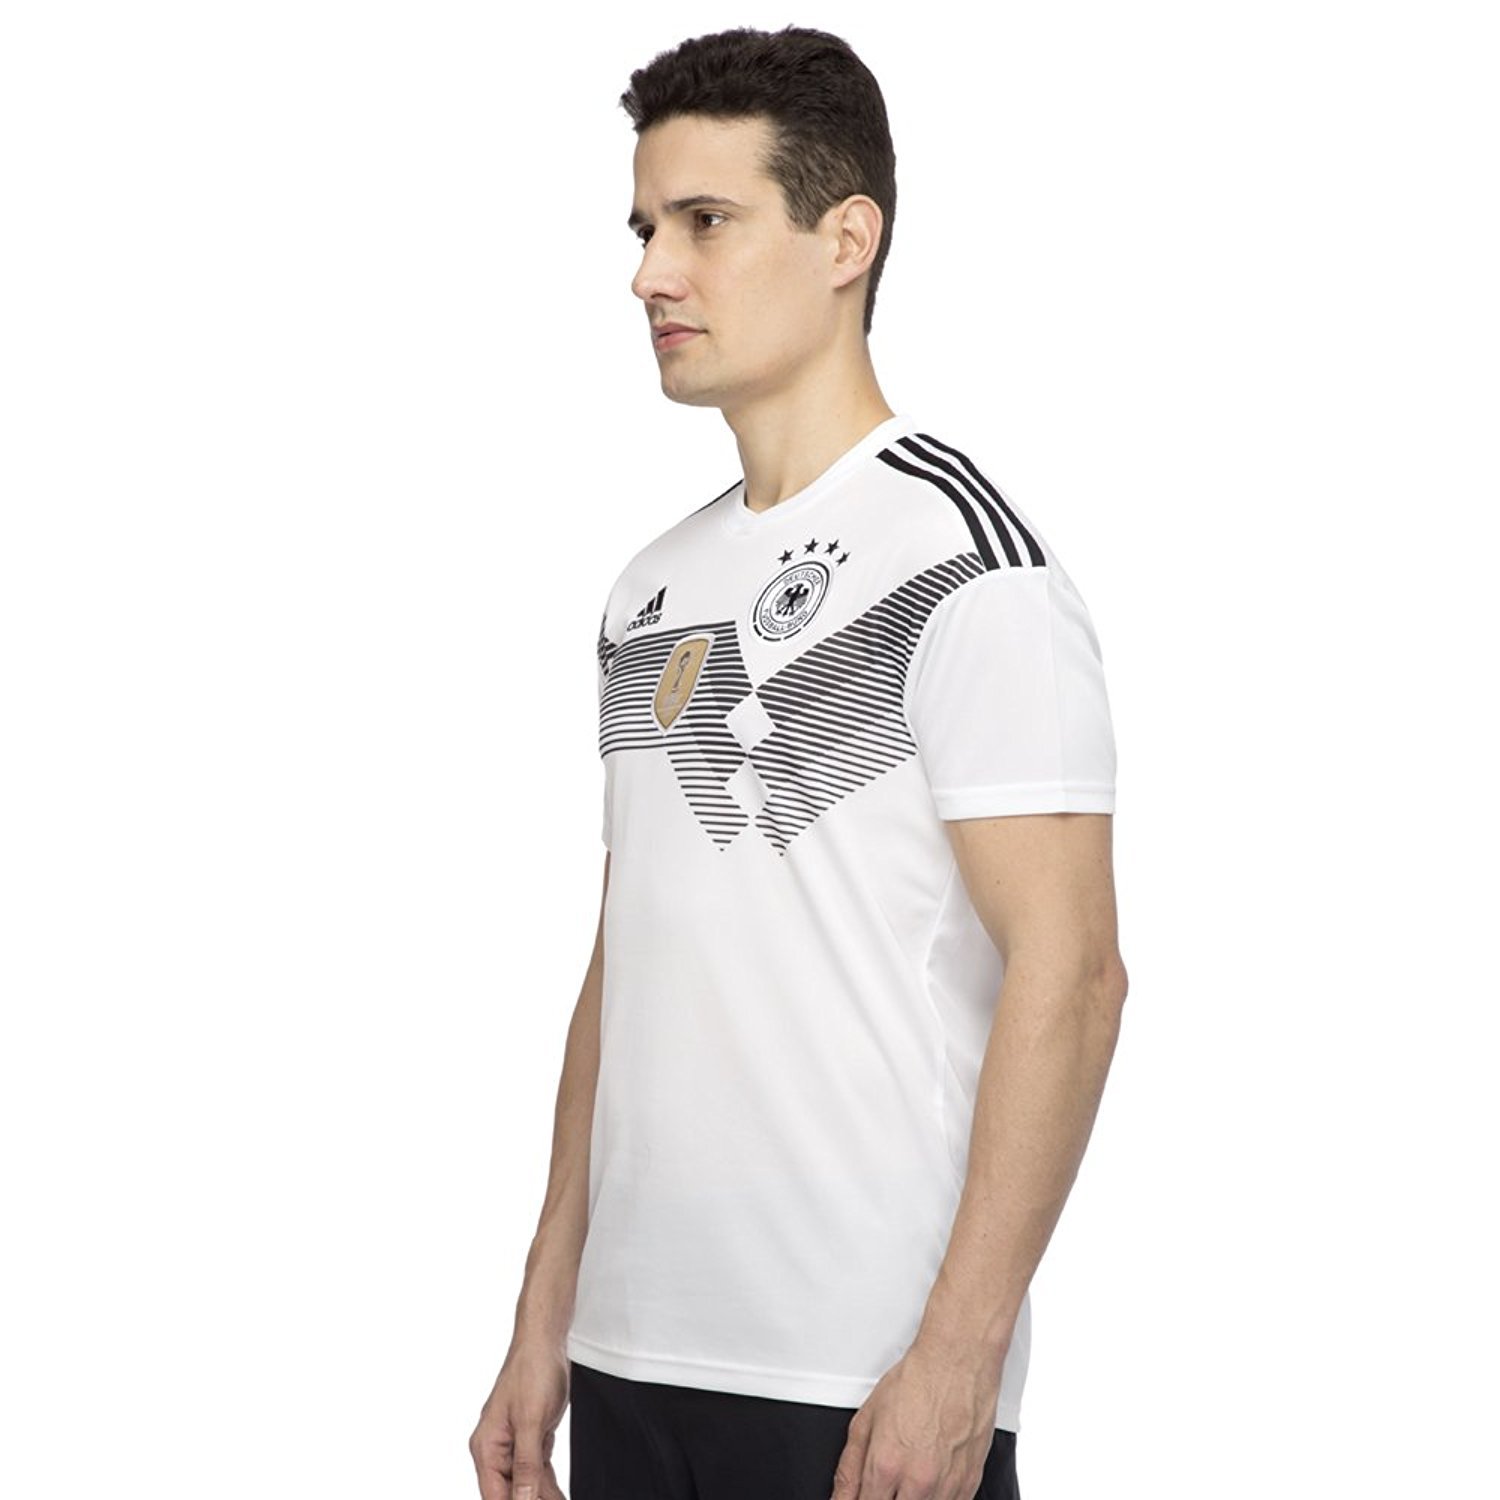 アディダス Adidas サッカー ドイツ代表 ホームレプリカユニフォーム半袖 Dtv68 メンズ Lee Thaanh 22